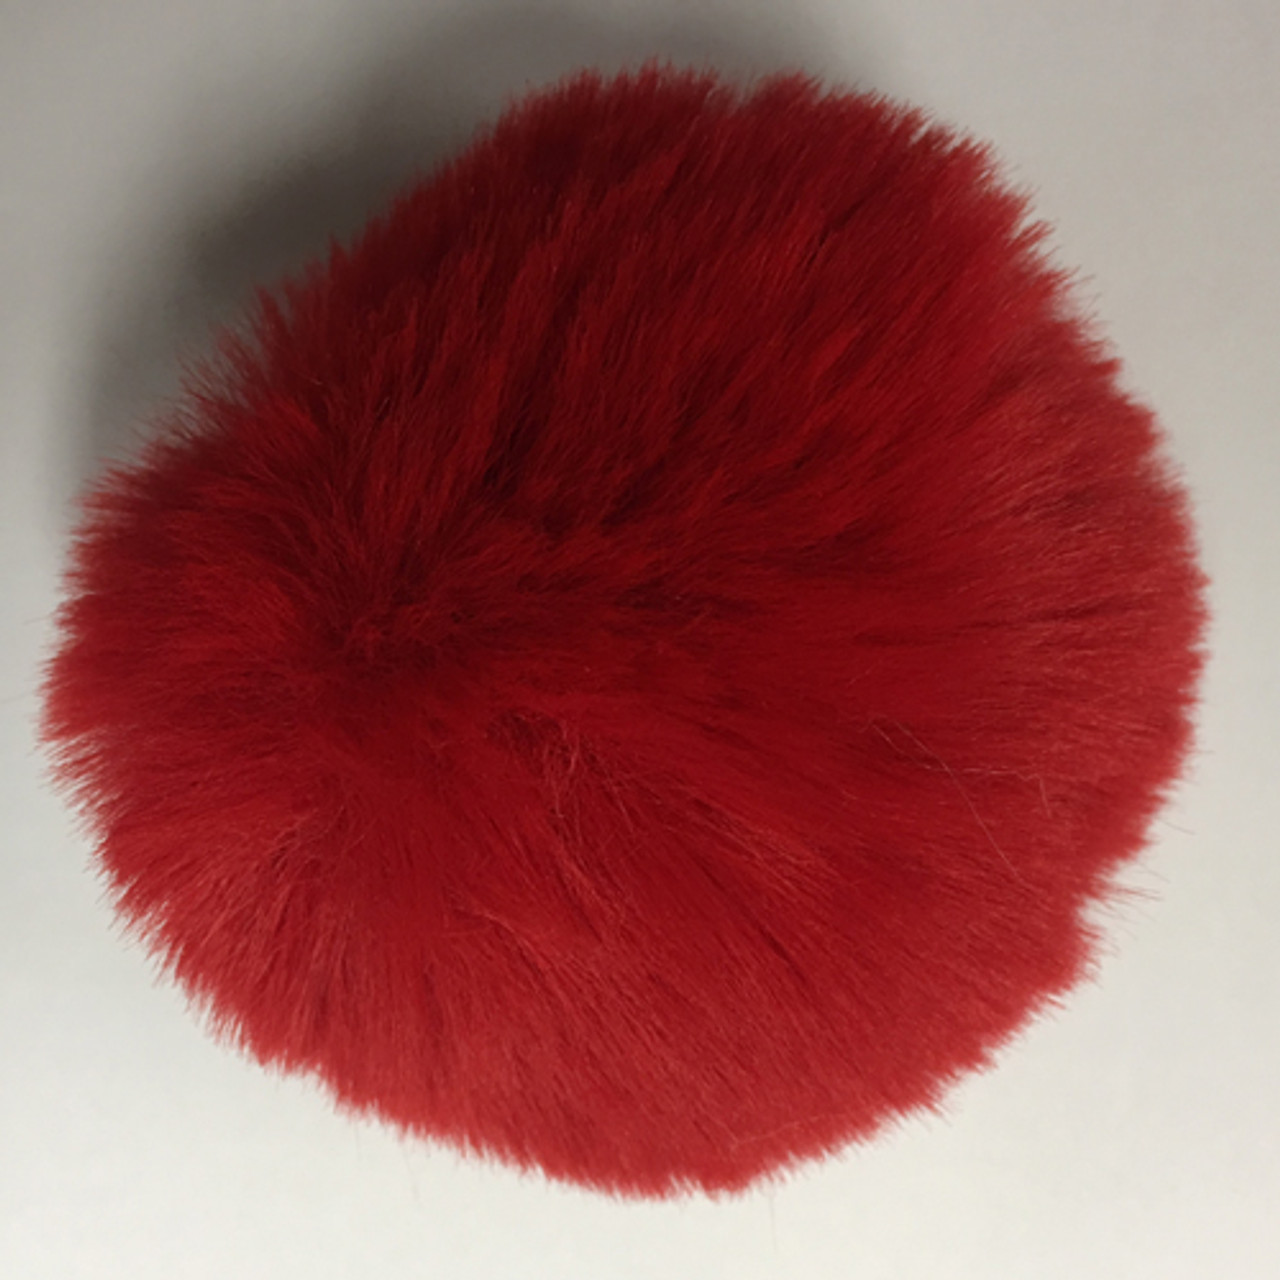 Red Fluff Balls, 1 Inch Red Pom Poms